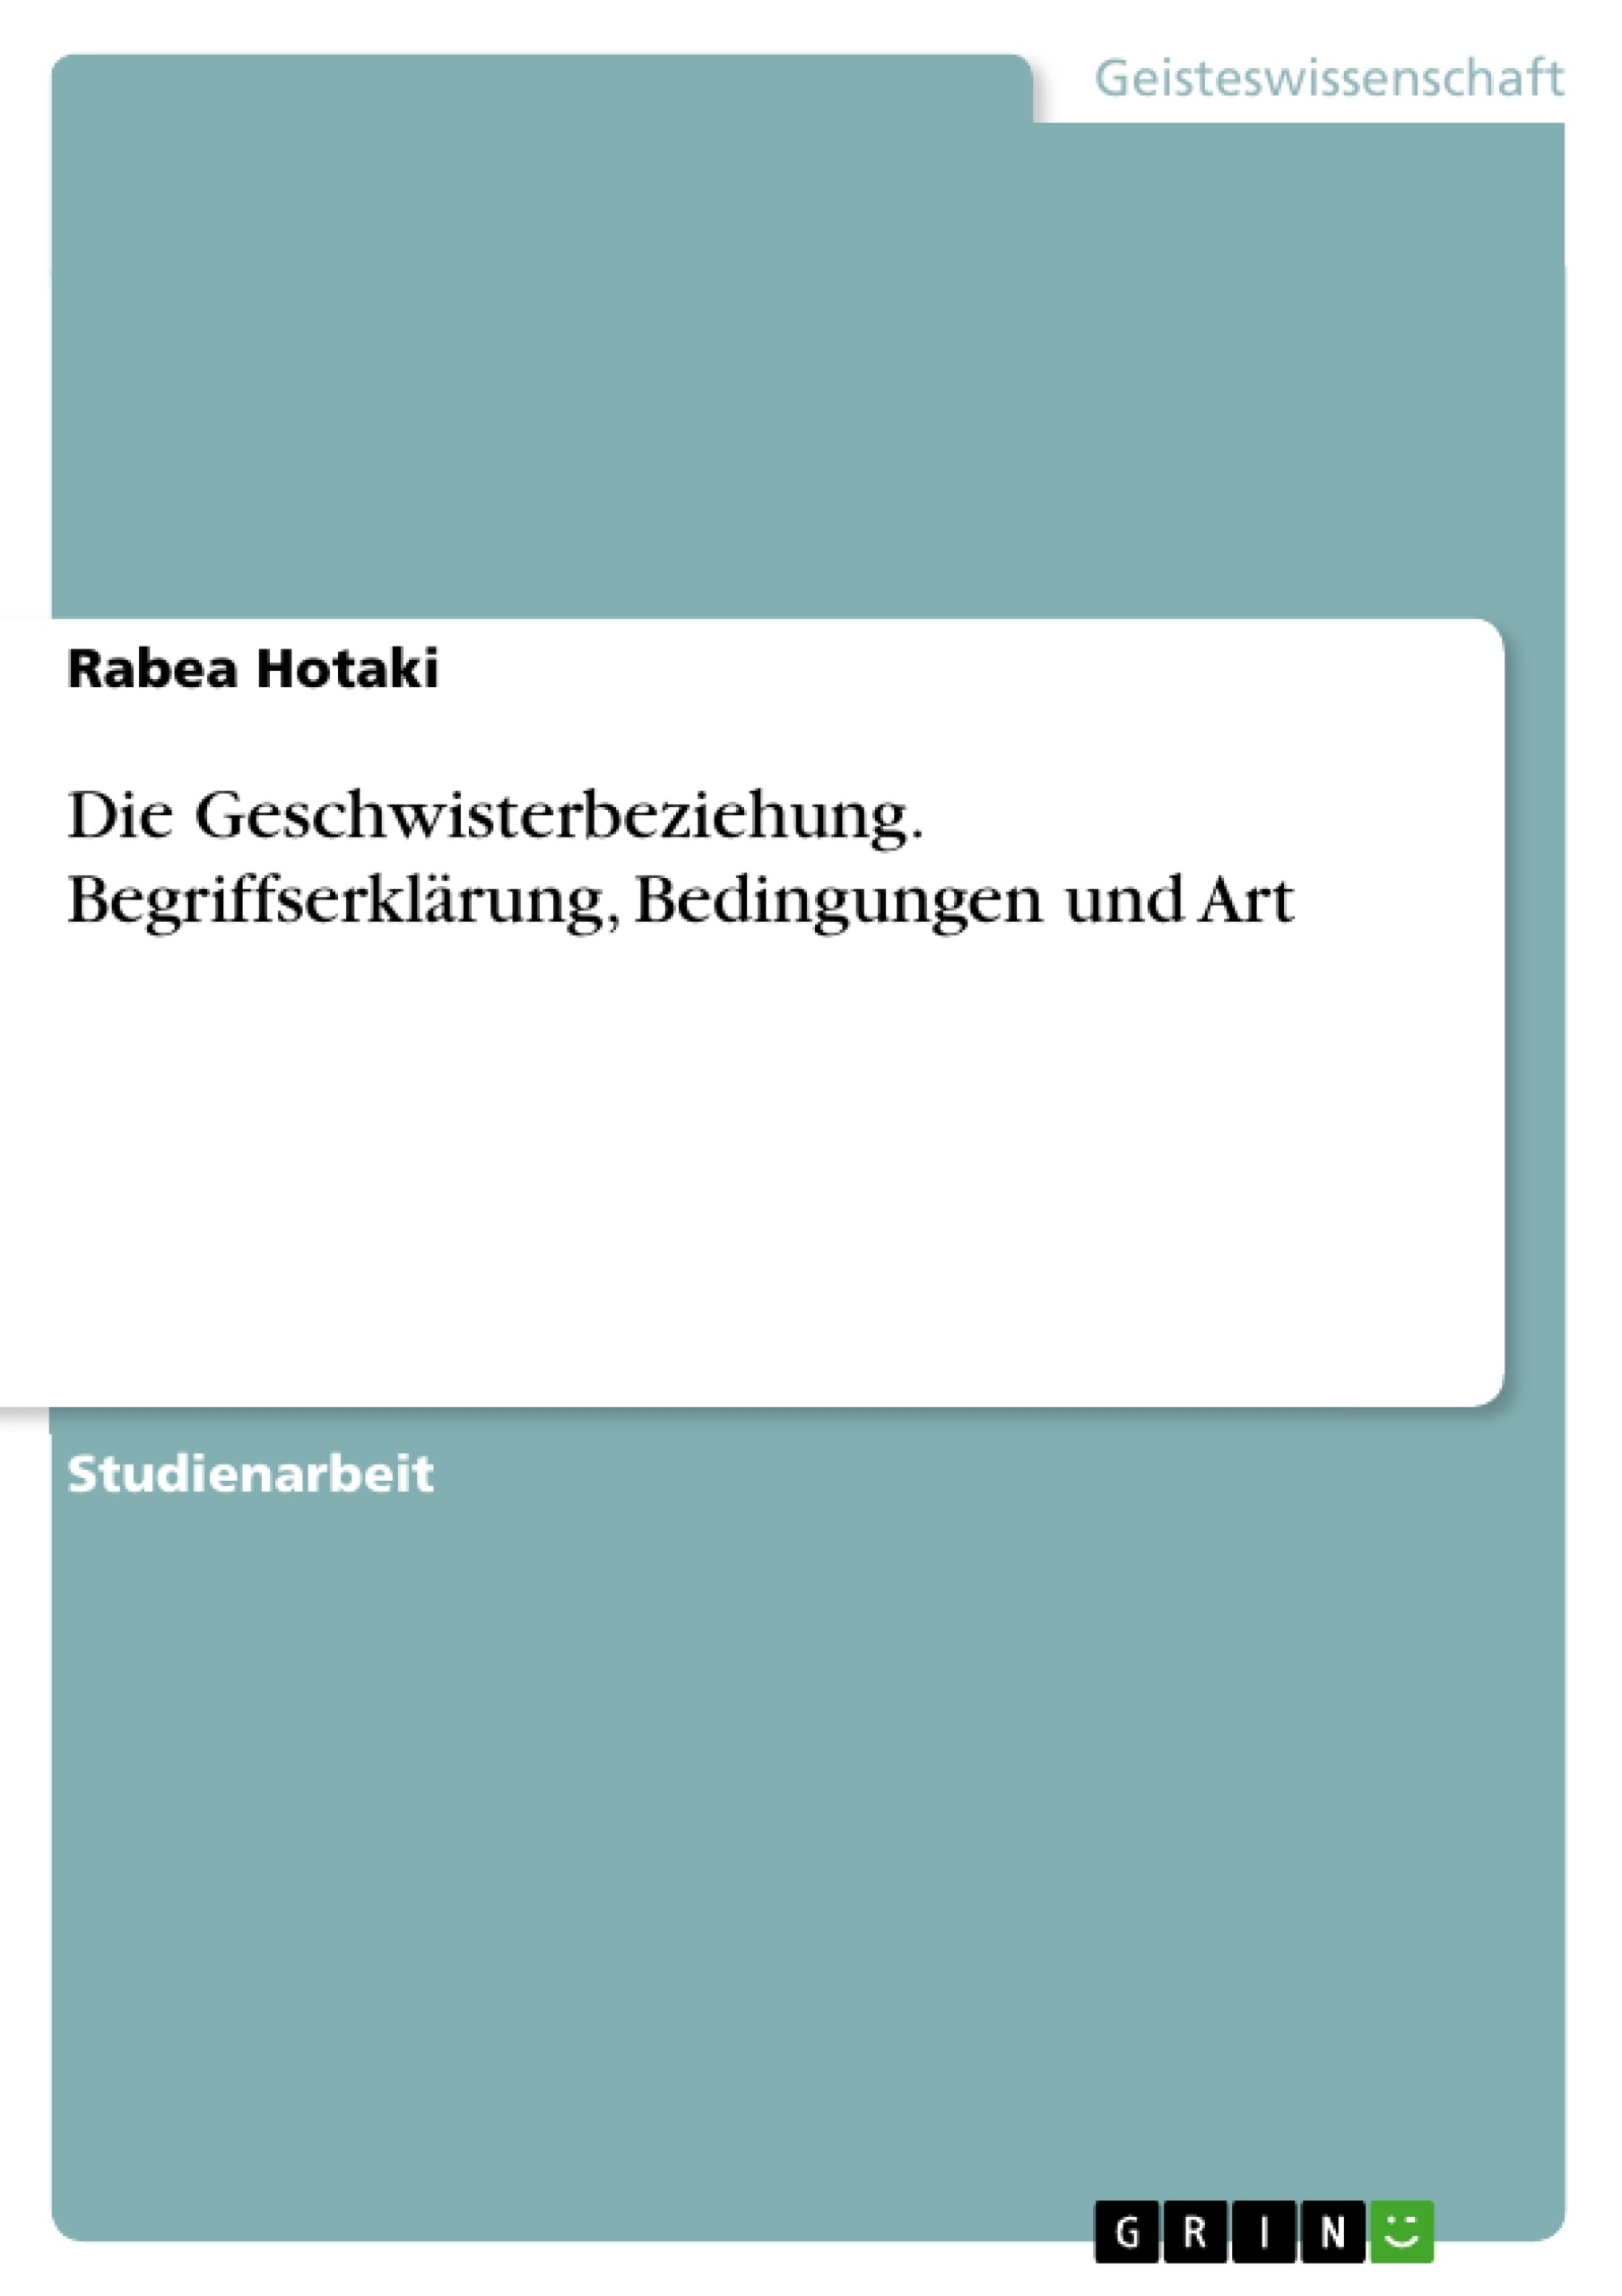 Title: Die Geschwisterbeziehung. Begriffserklärung, Bedingungen und Art